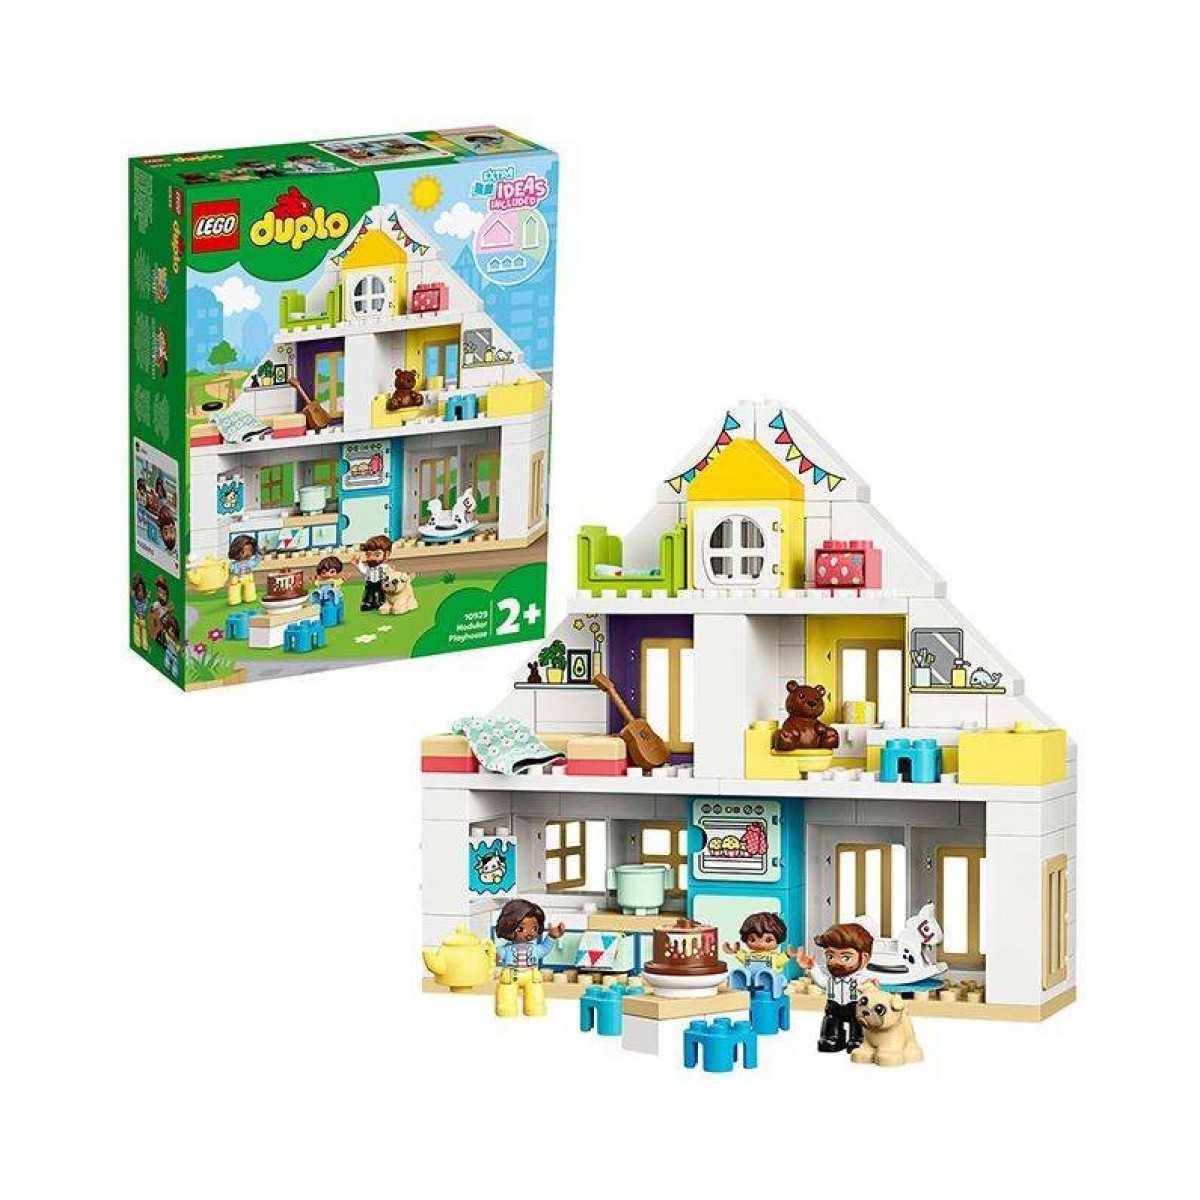 LEGO樂高得寶系列 夢想之家10929拼插積木玩具